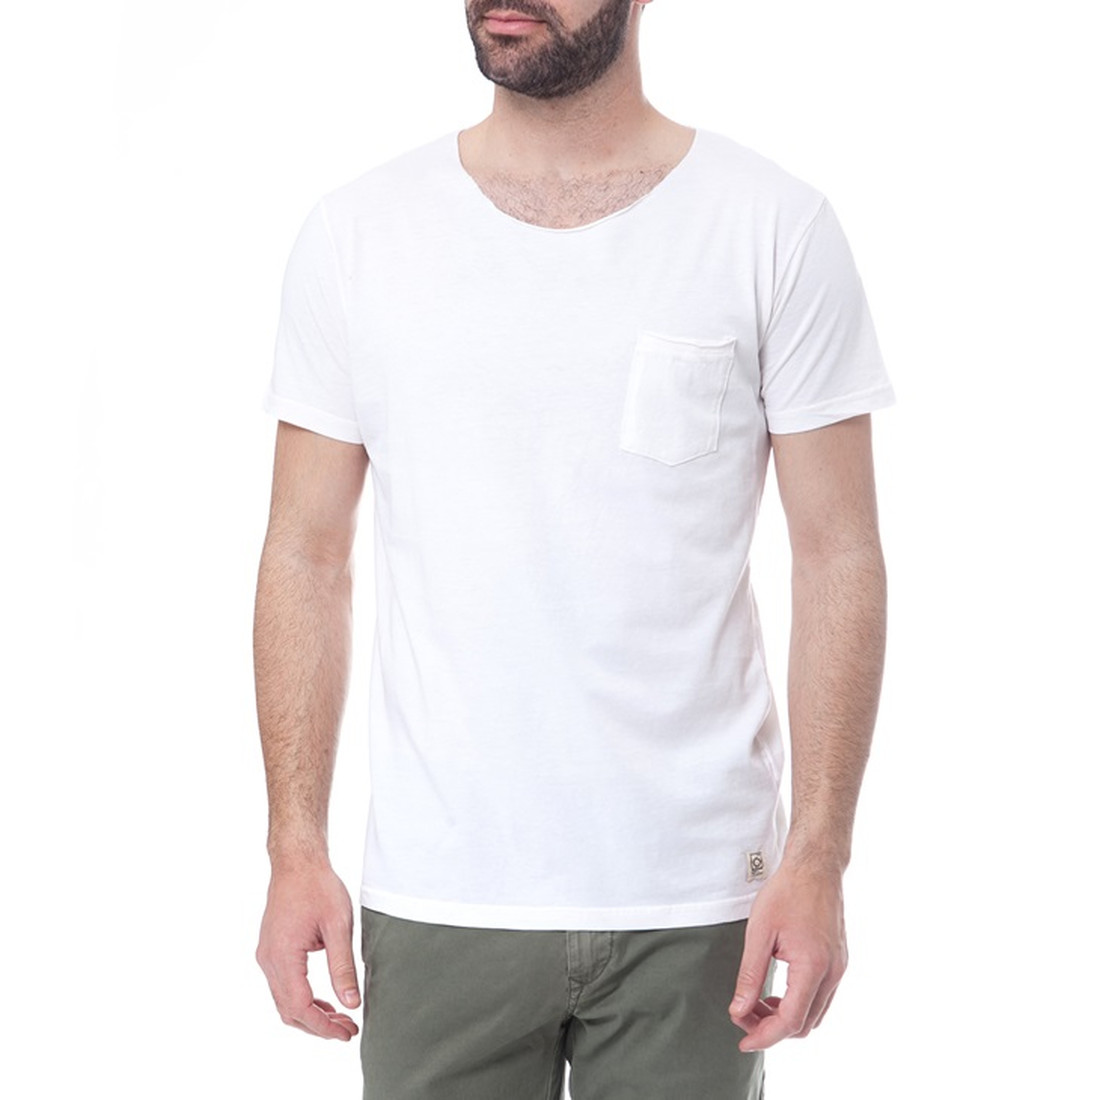 Λευκό Τ-shirt για όλες τις ώρες και είσαι έτοιμος για διακοπές